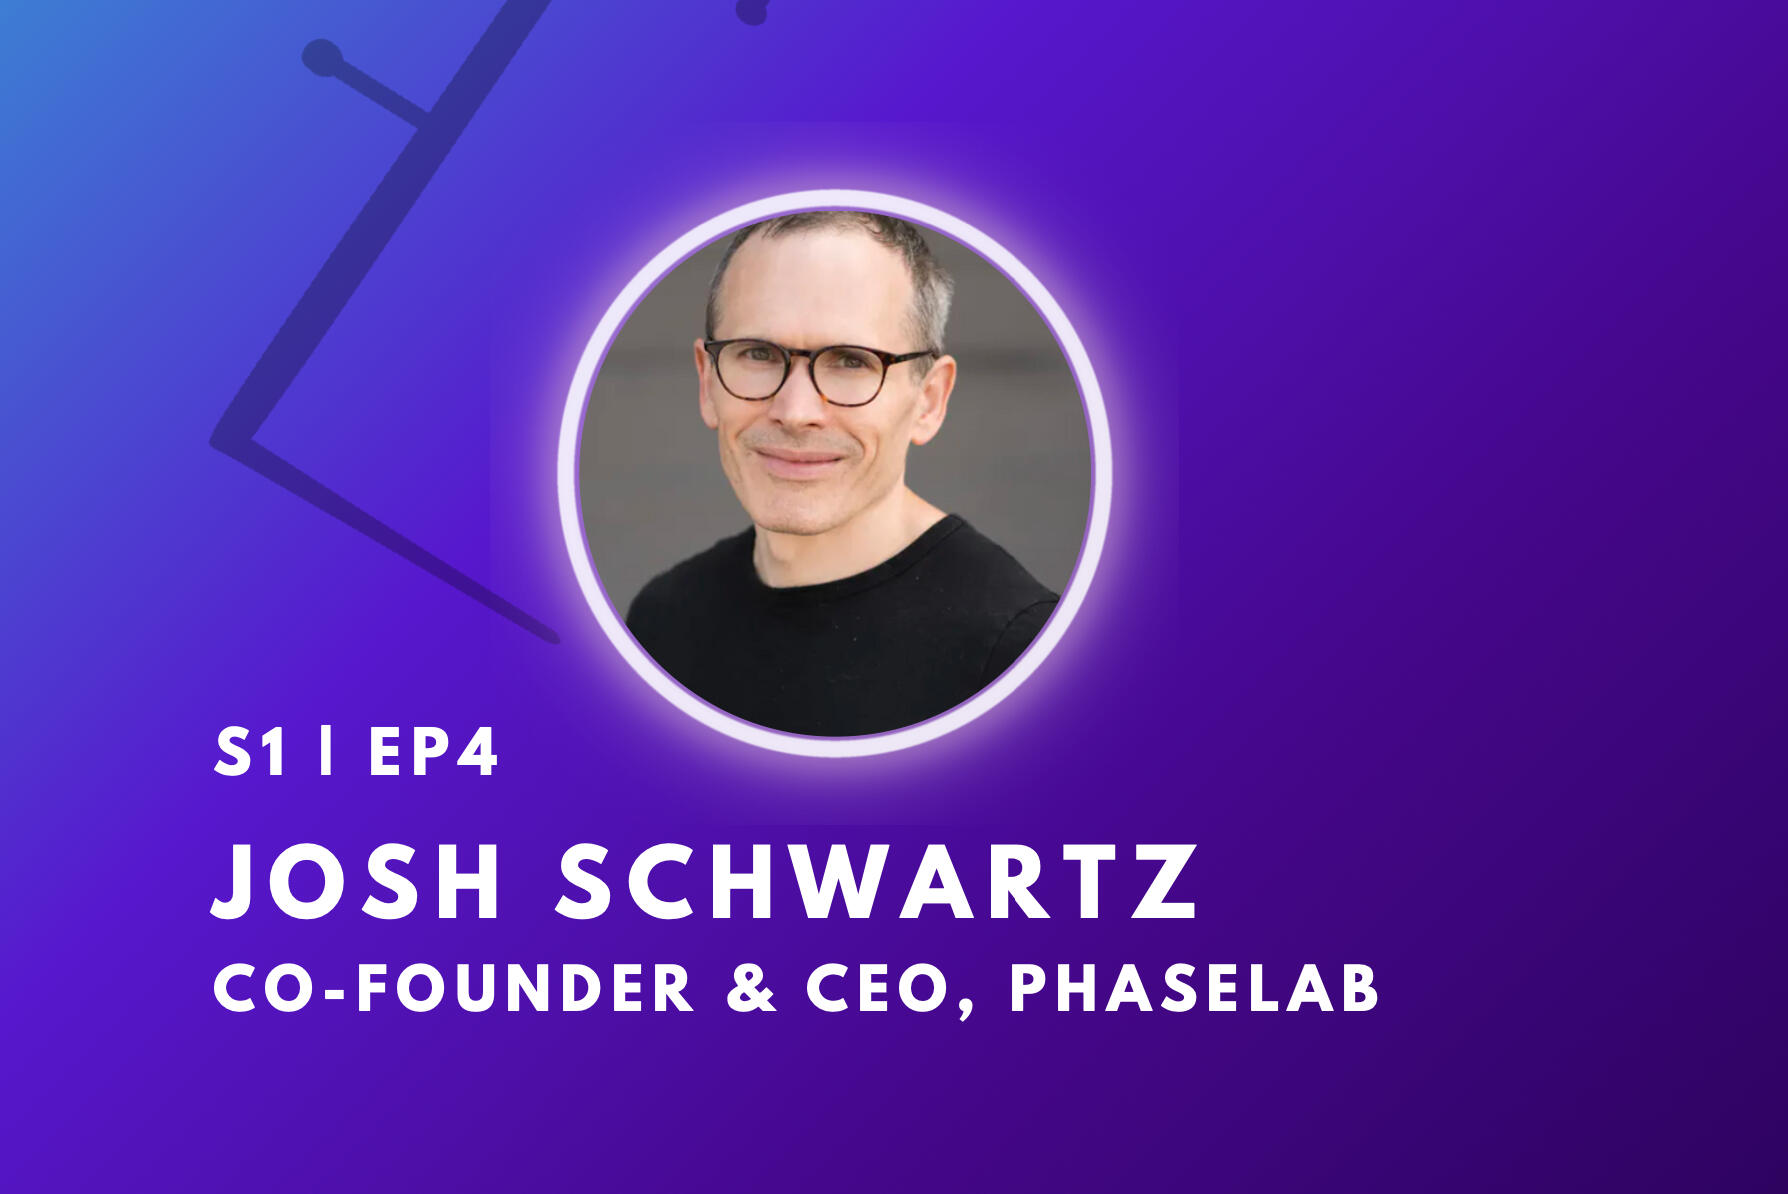 Josh Schwartz podcast guest on gradient purple background, wearing black tshirt.